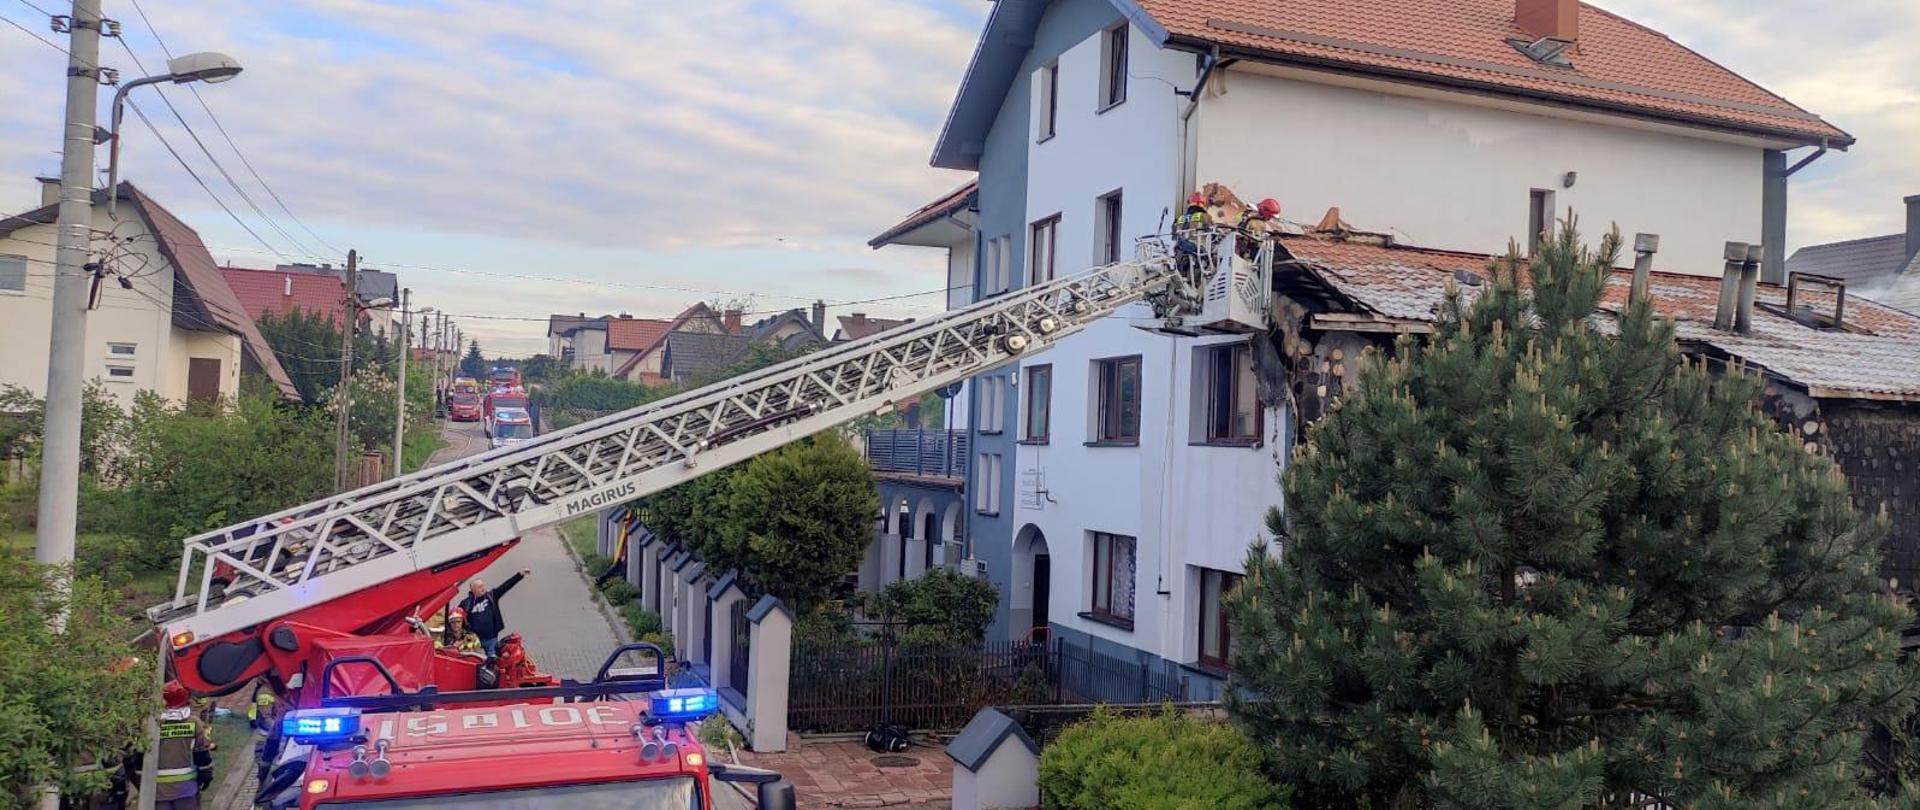 Zdjęcie przedstawia po prawej stronie budynek pensjonatu gdzie wybuchł pożar. Do budynku przystawiona drabina mechaniczna a w jej koszu ratownicy demontują elementy budynku.